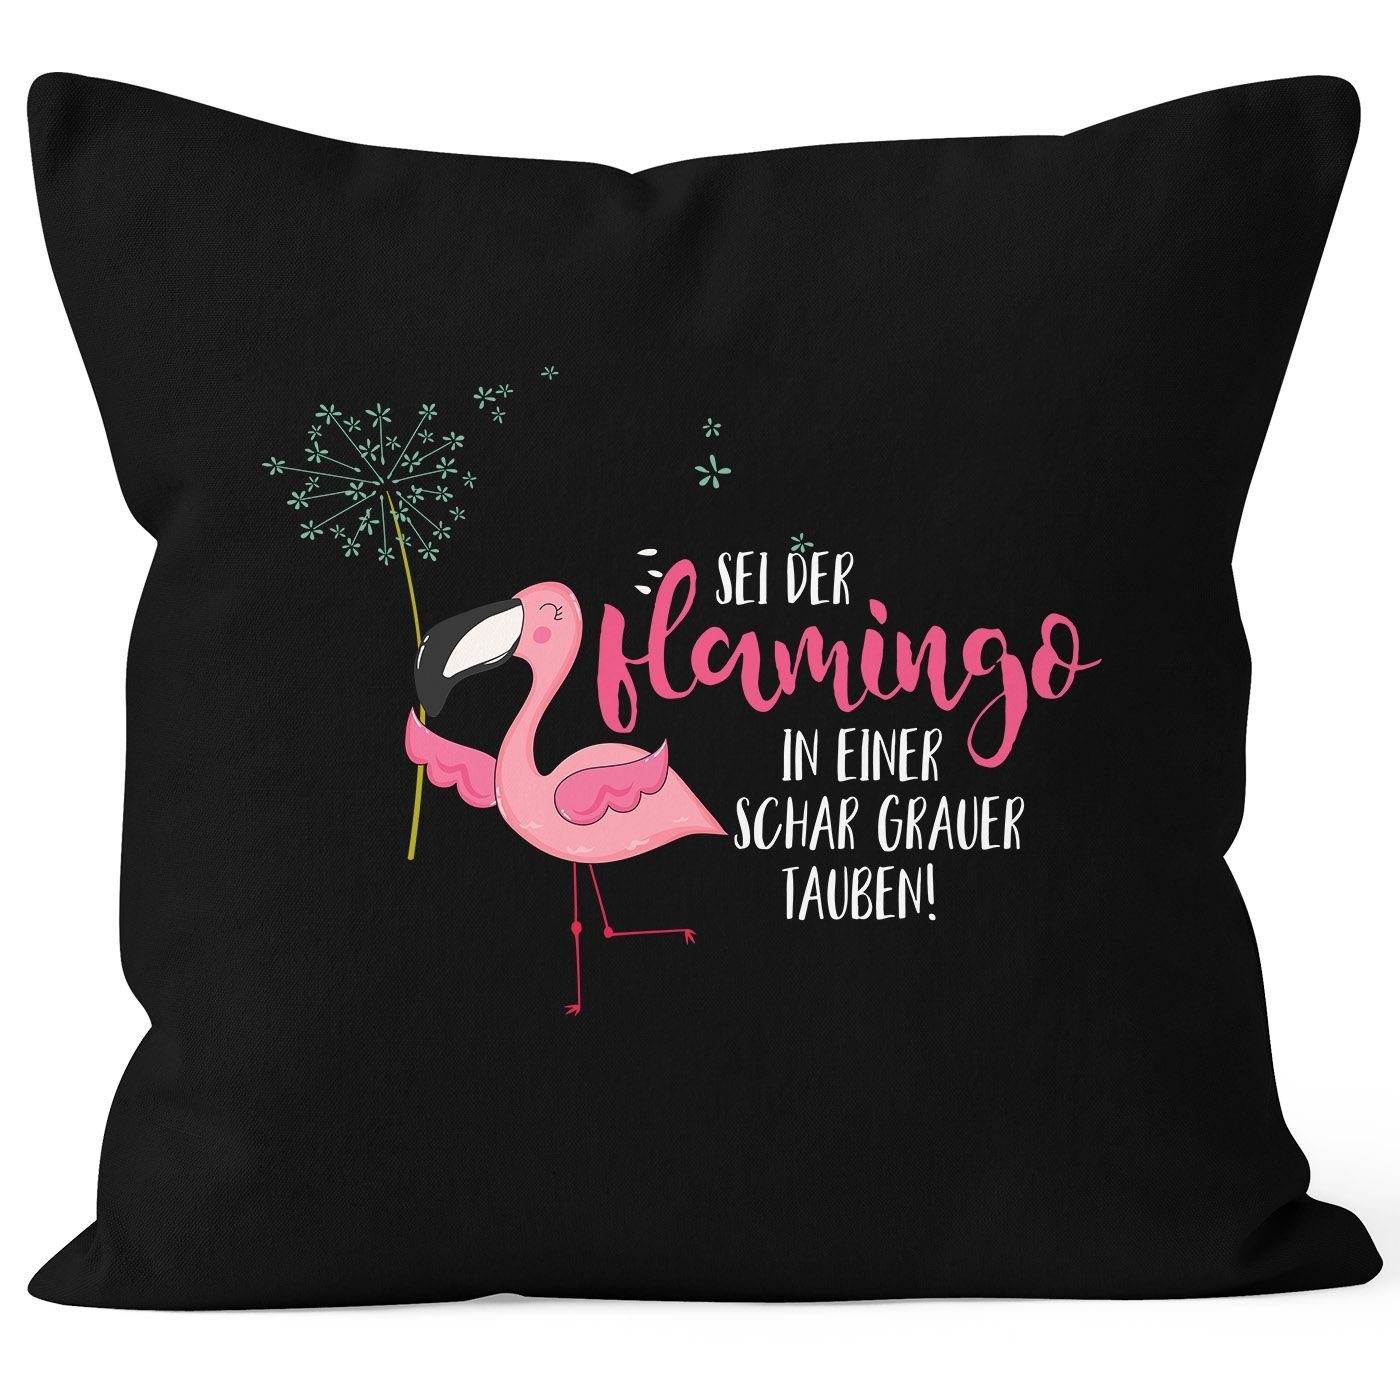 MoonWorks Dekokissen Kissenbezug Baumwolle Flamingo Flamingo Tauben Kissen-Hülle einer MoonWorks® grauer 40x40 Schar der Pusteblume schwarz in Deko-Kissen sei